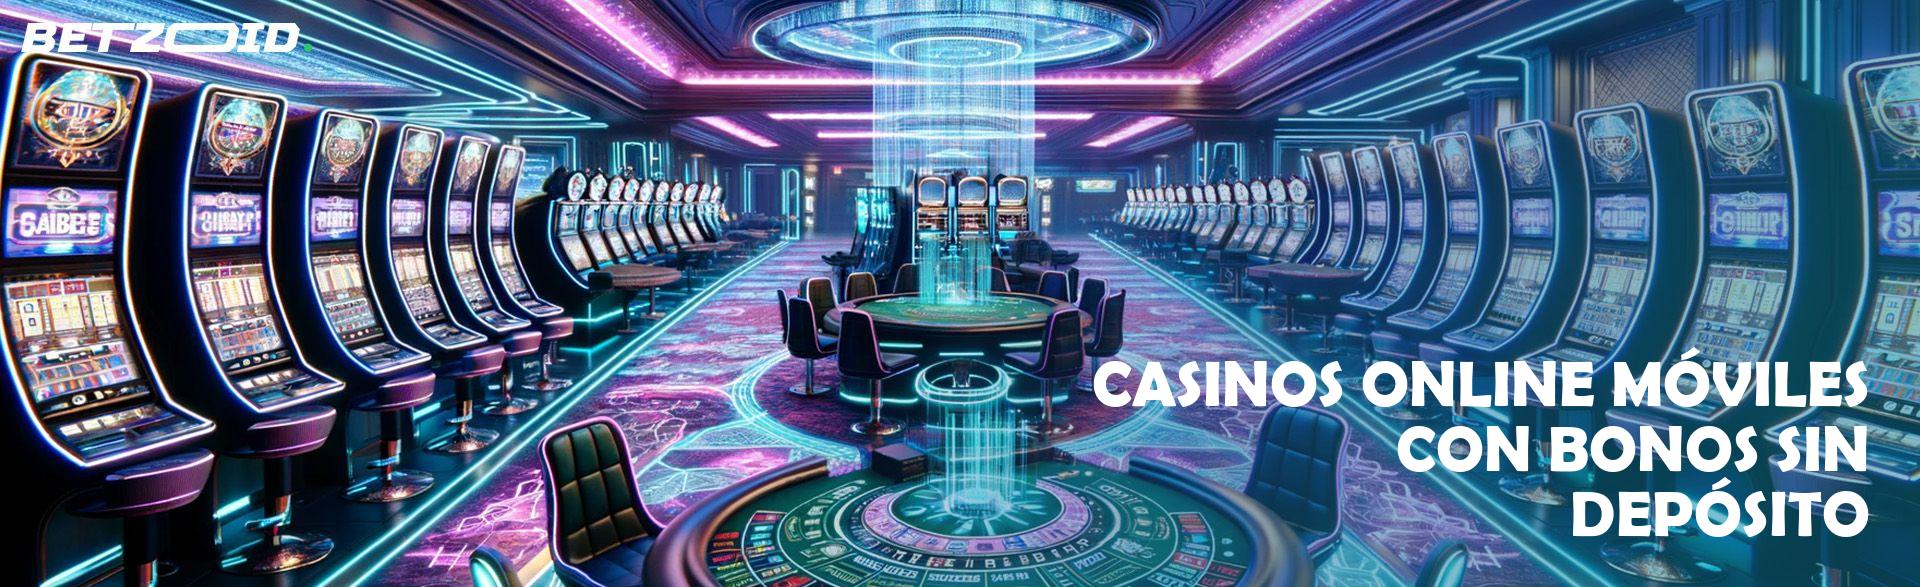 Casinos Online Móviles con Bonos sin Depósito.